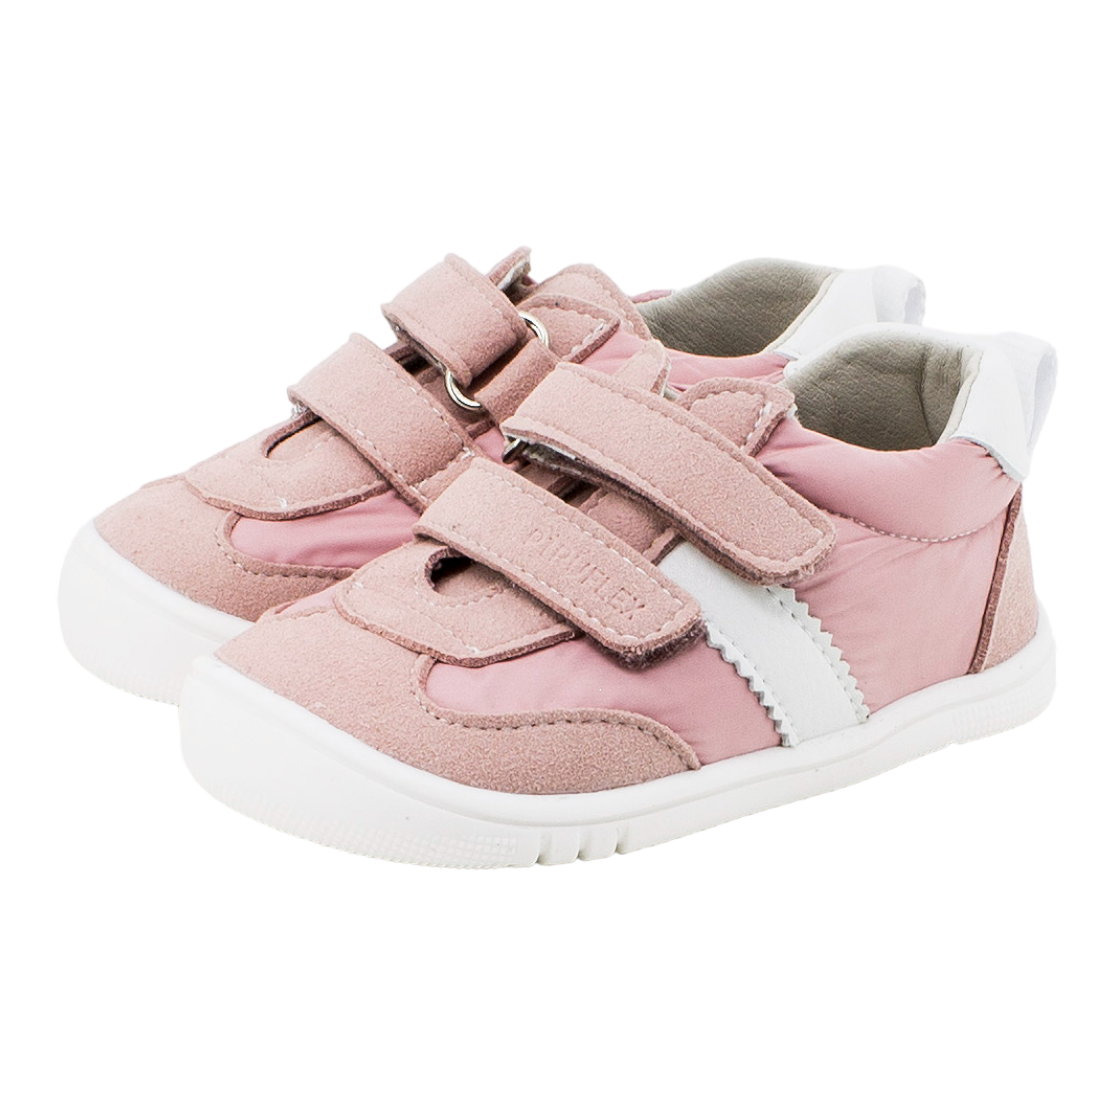 Zapato respetuoso vegano rosa y blanco